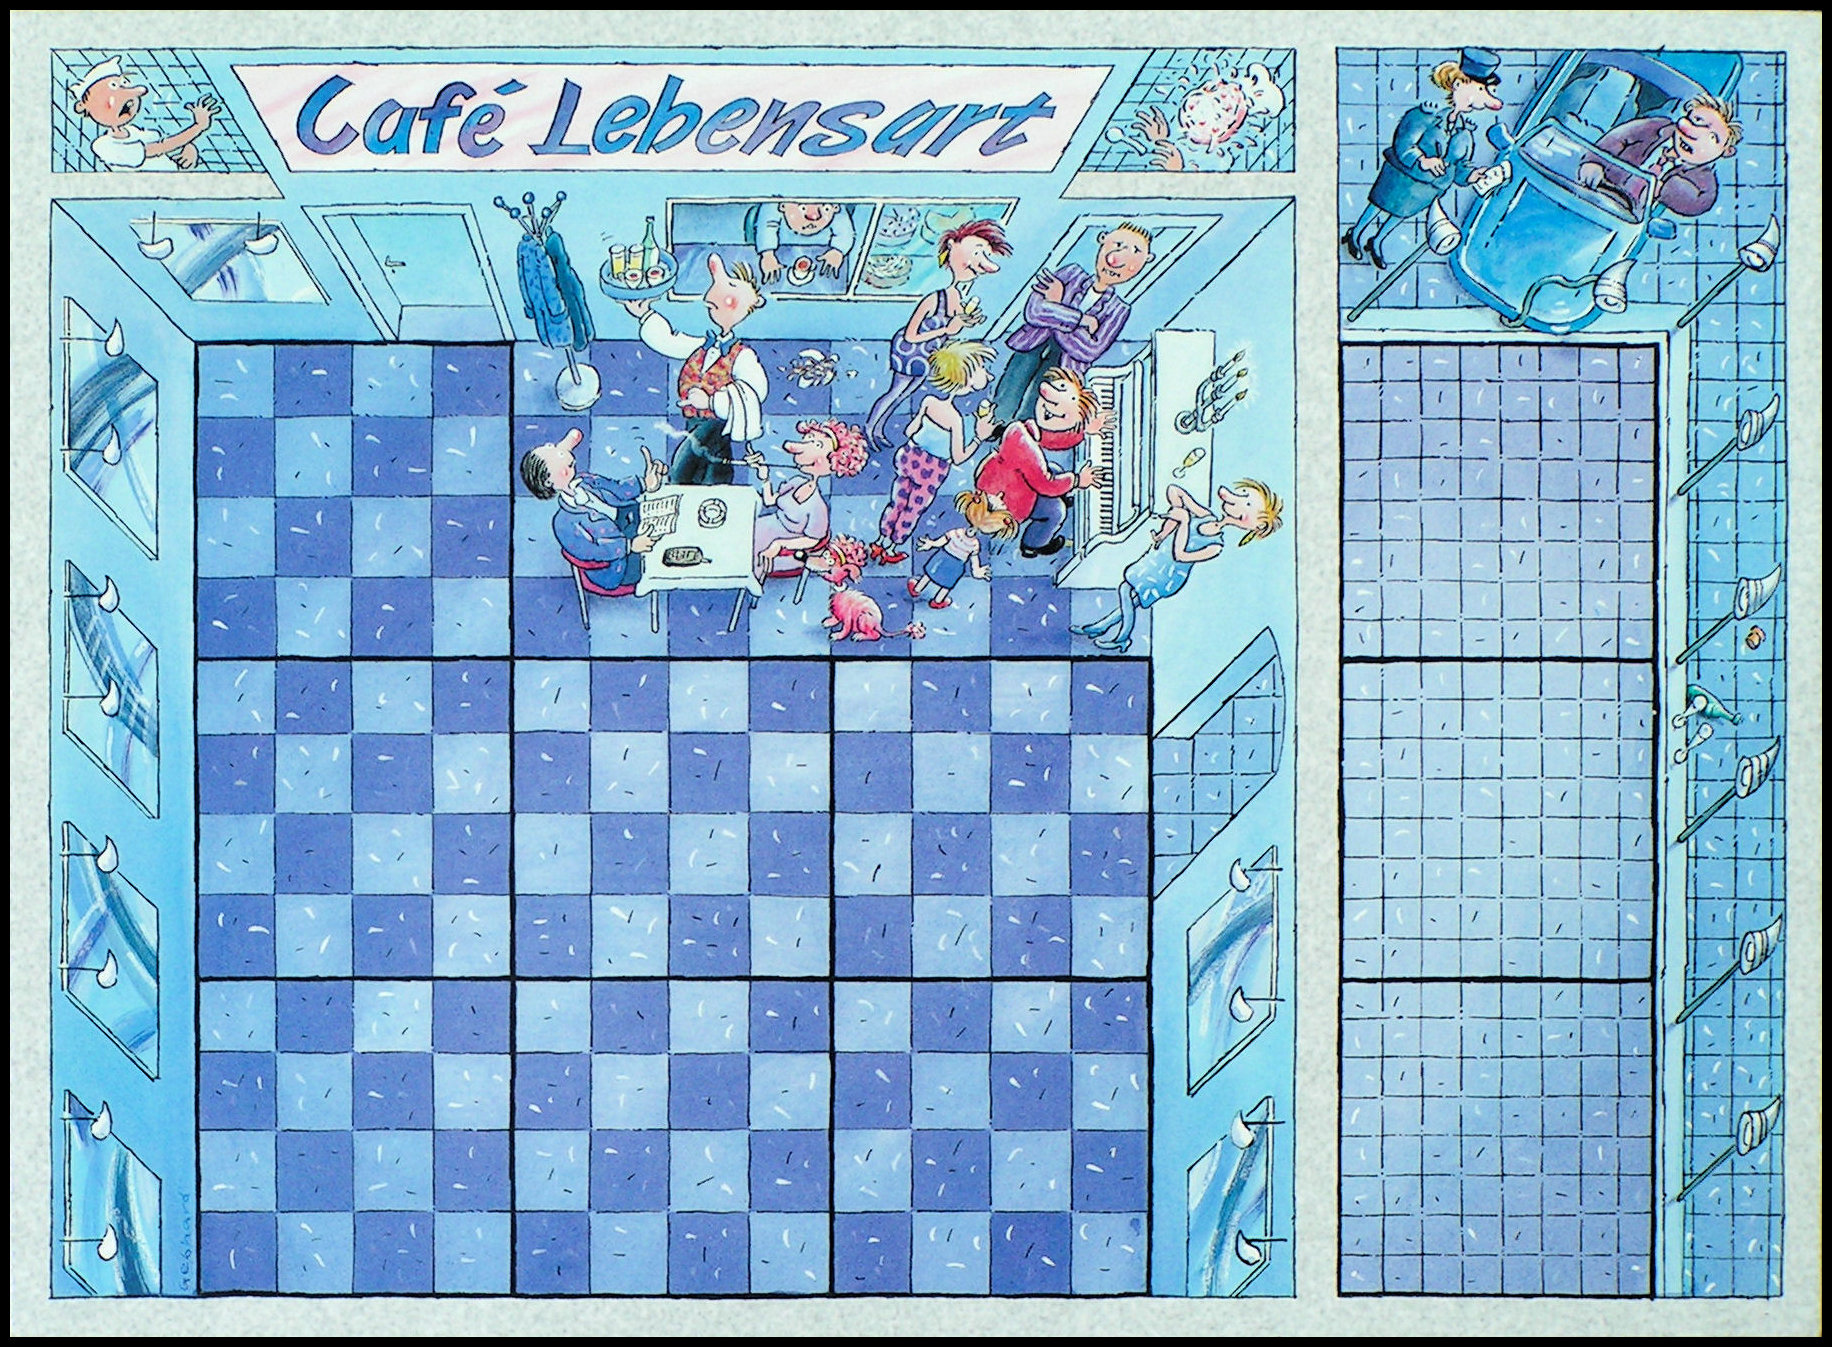 Volle Huette - The Cafe Lebensart Board